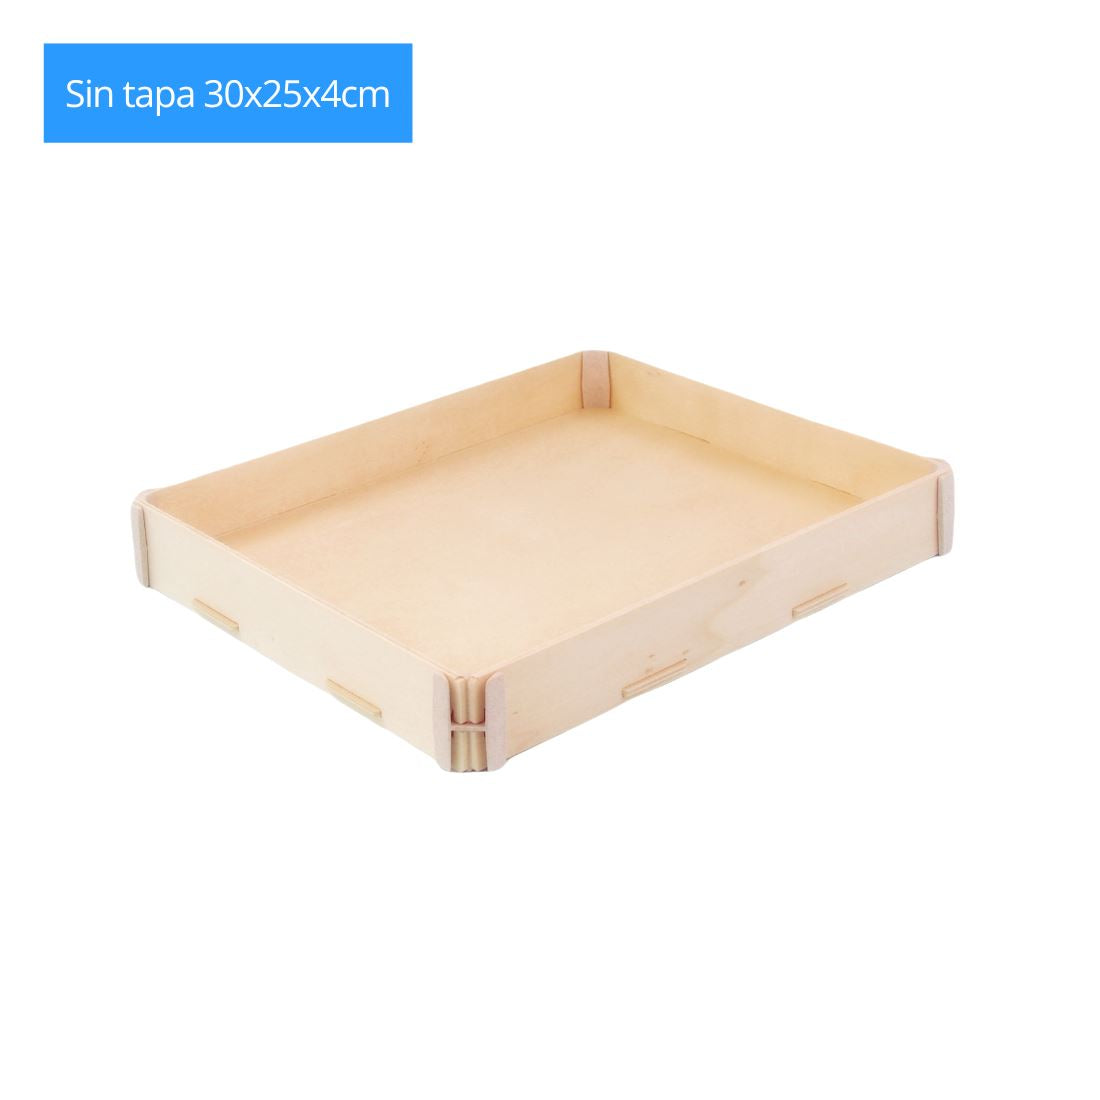 Cajas de madera personalizadas y automontables 📦, Sincla